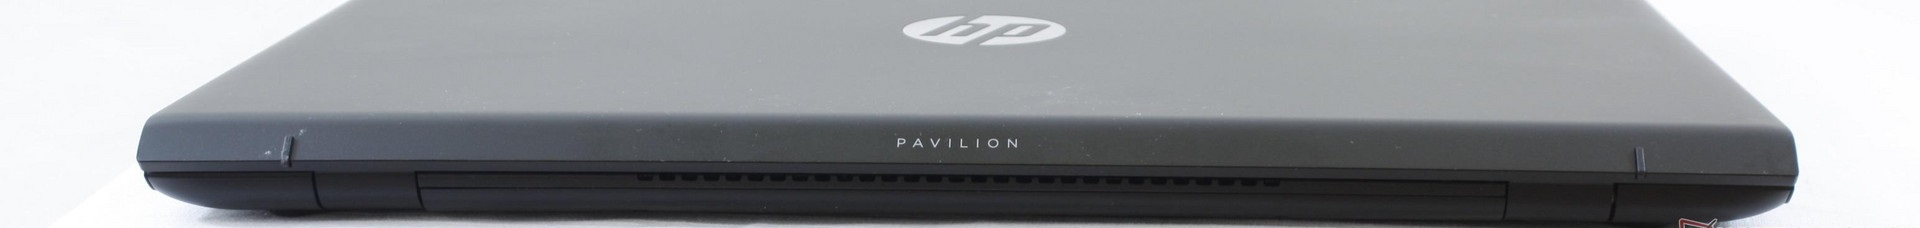 Đánh giá Laptop HP Pavilion 15 Power (i7-7700HQ, GTX 1050), Chuyên trang tư vấn về Laptop